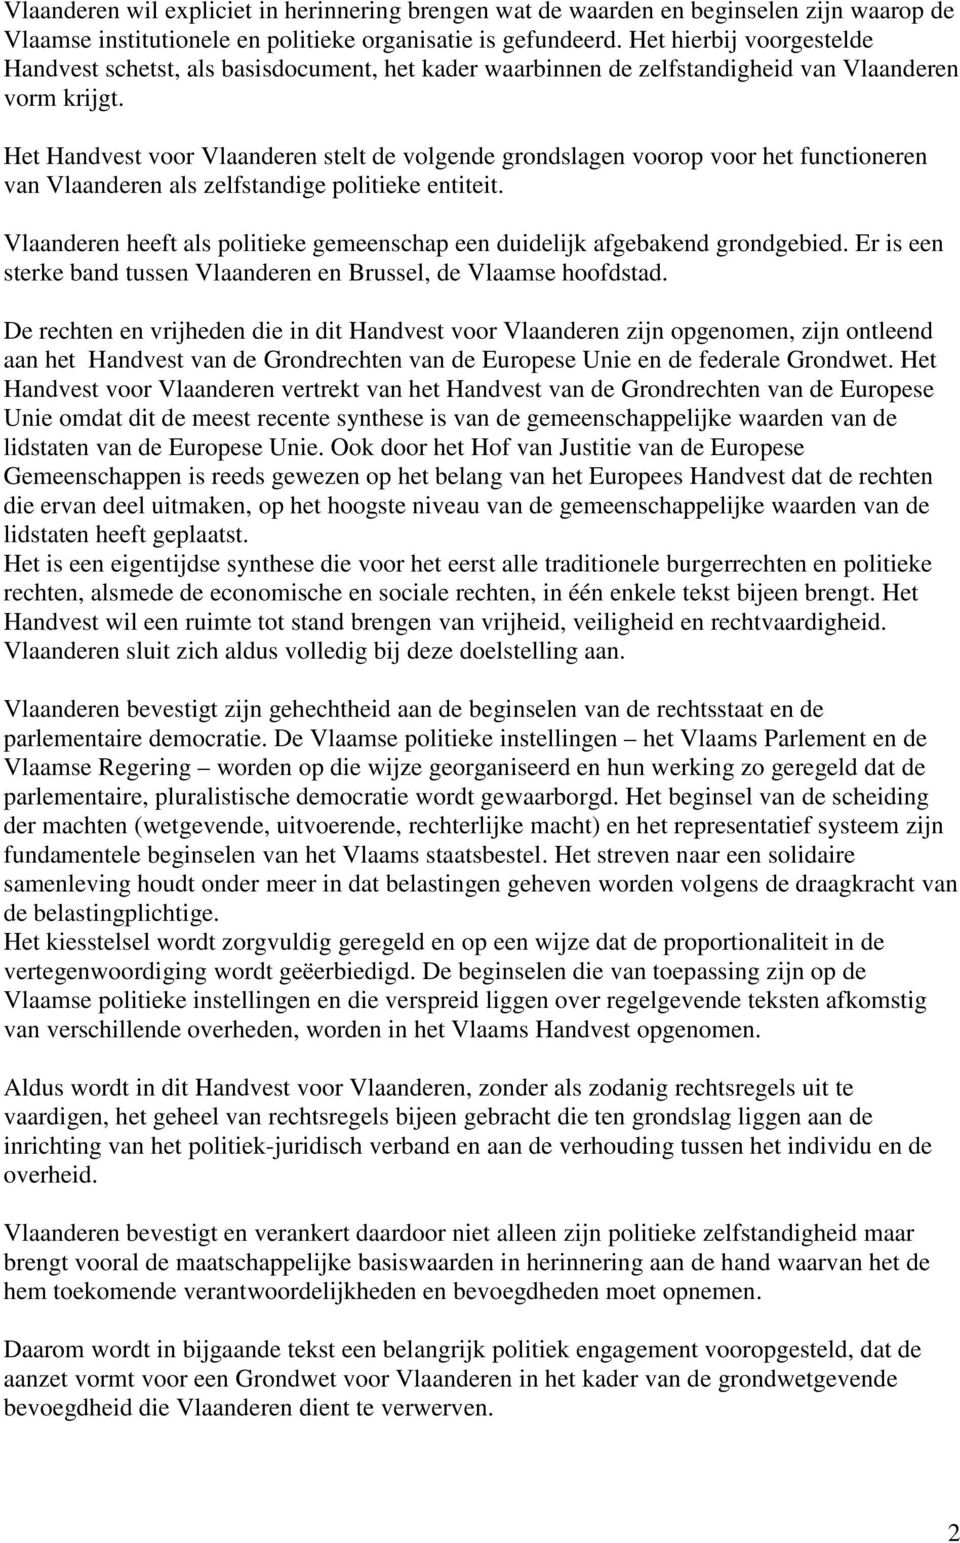 Het Handvest voor Vlaanderen stelt de volgende grondslagen voorop voor het functioneren van Vlaanderen als zelfstandige politieke entiteit.